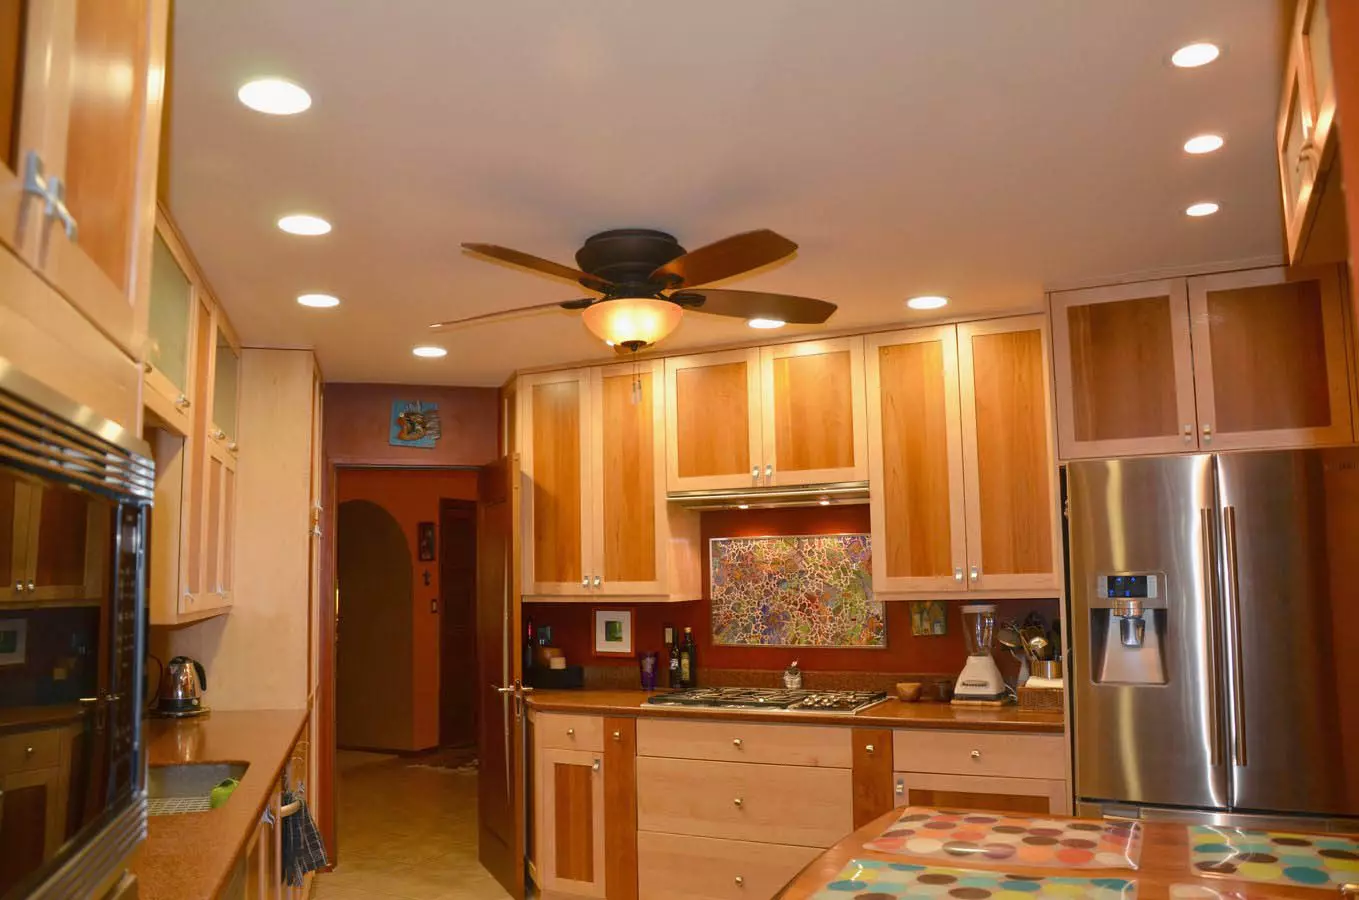 Faretti in cucina (32 foto): illuminazione. La loro posizione sopra la superficie di lavoro e la distanza delle lampade dal muro 21005_30